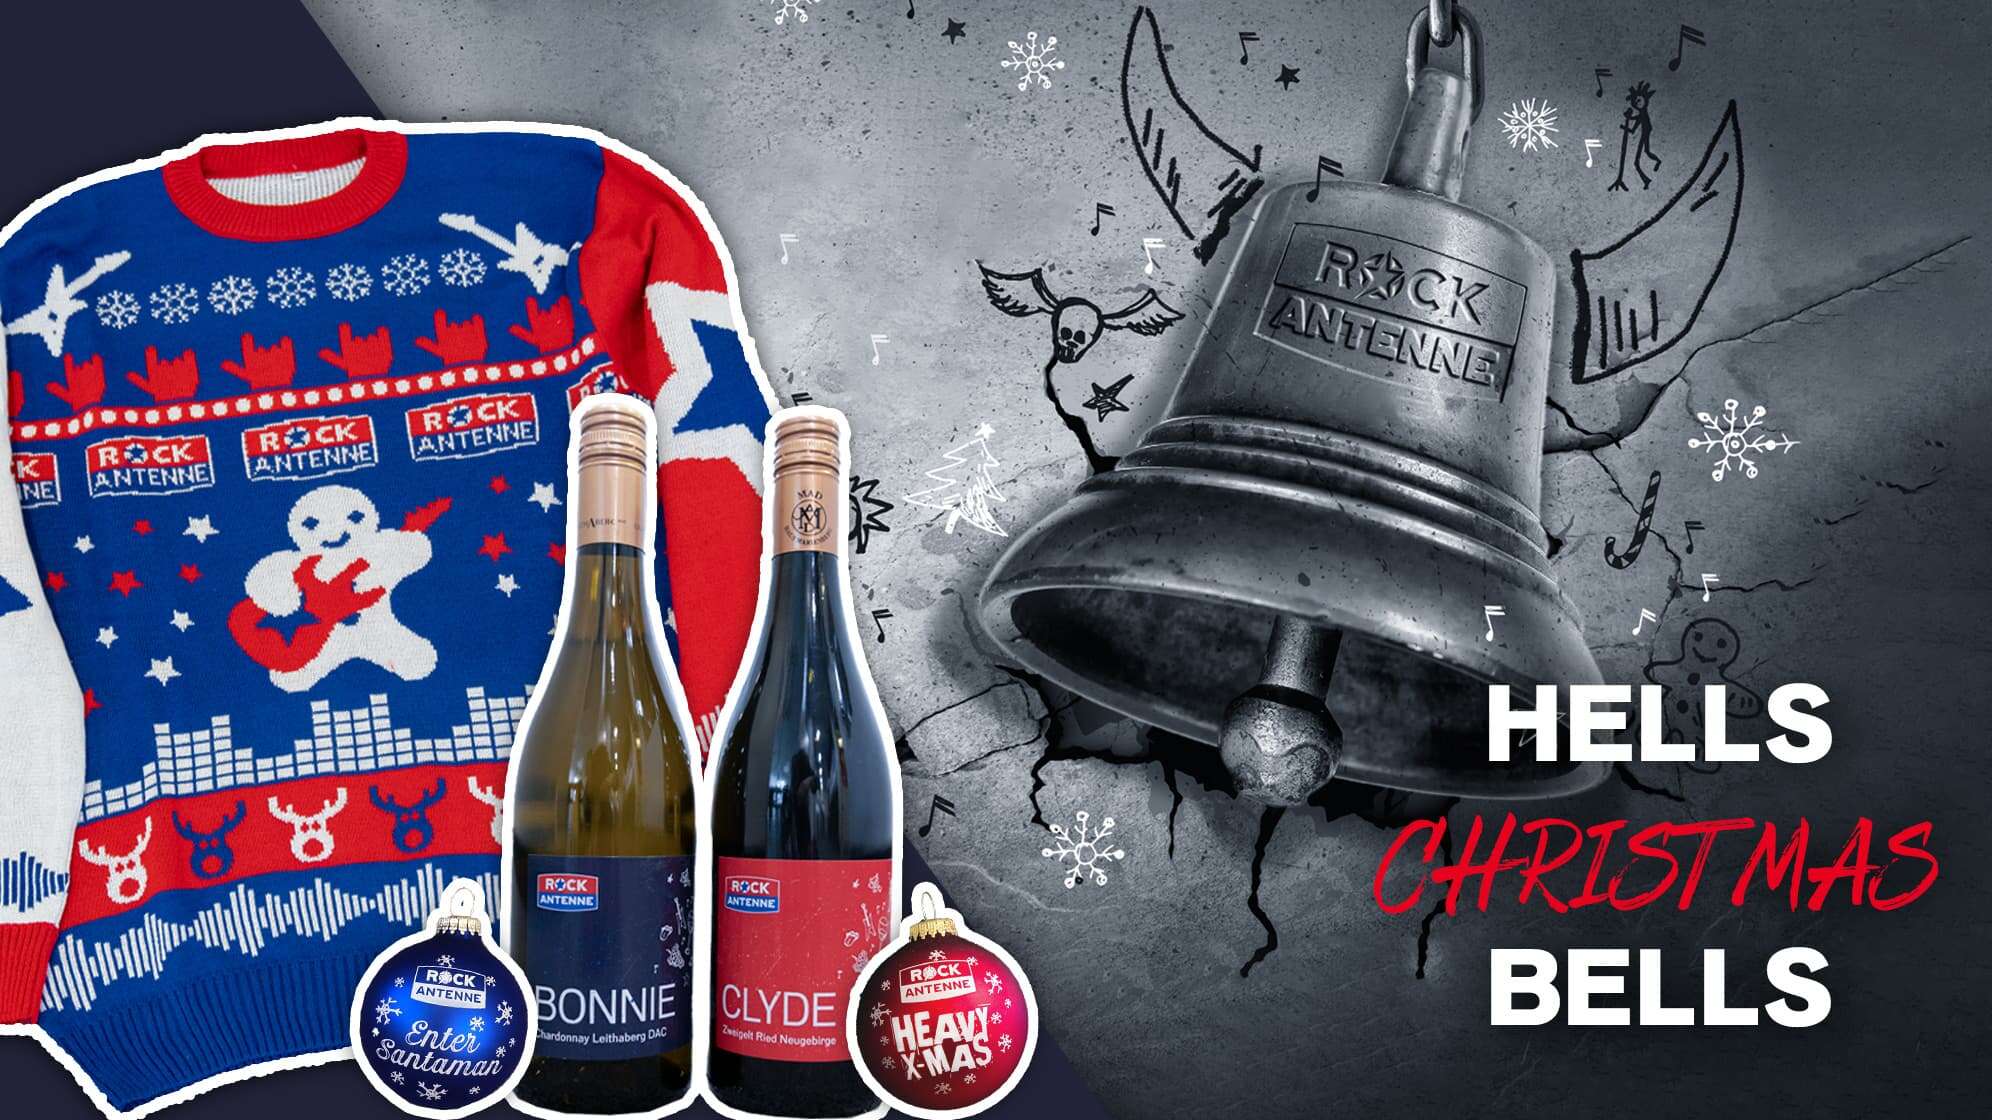 Aktionsgrafik der "ROCK ANTENNE Hells Christmas Bells" - eine stilisierte Glocke, dazu ein Abbild des ROCK ANTENNE Ugly Christmas Sweaters, 2 Flaschen ROCK ANTENNE Wein und 2 ROCK ANTENNE Weihnachtsbaumkugeln